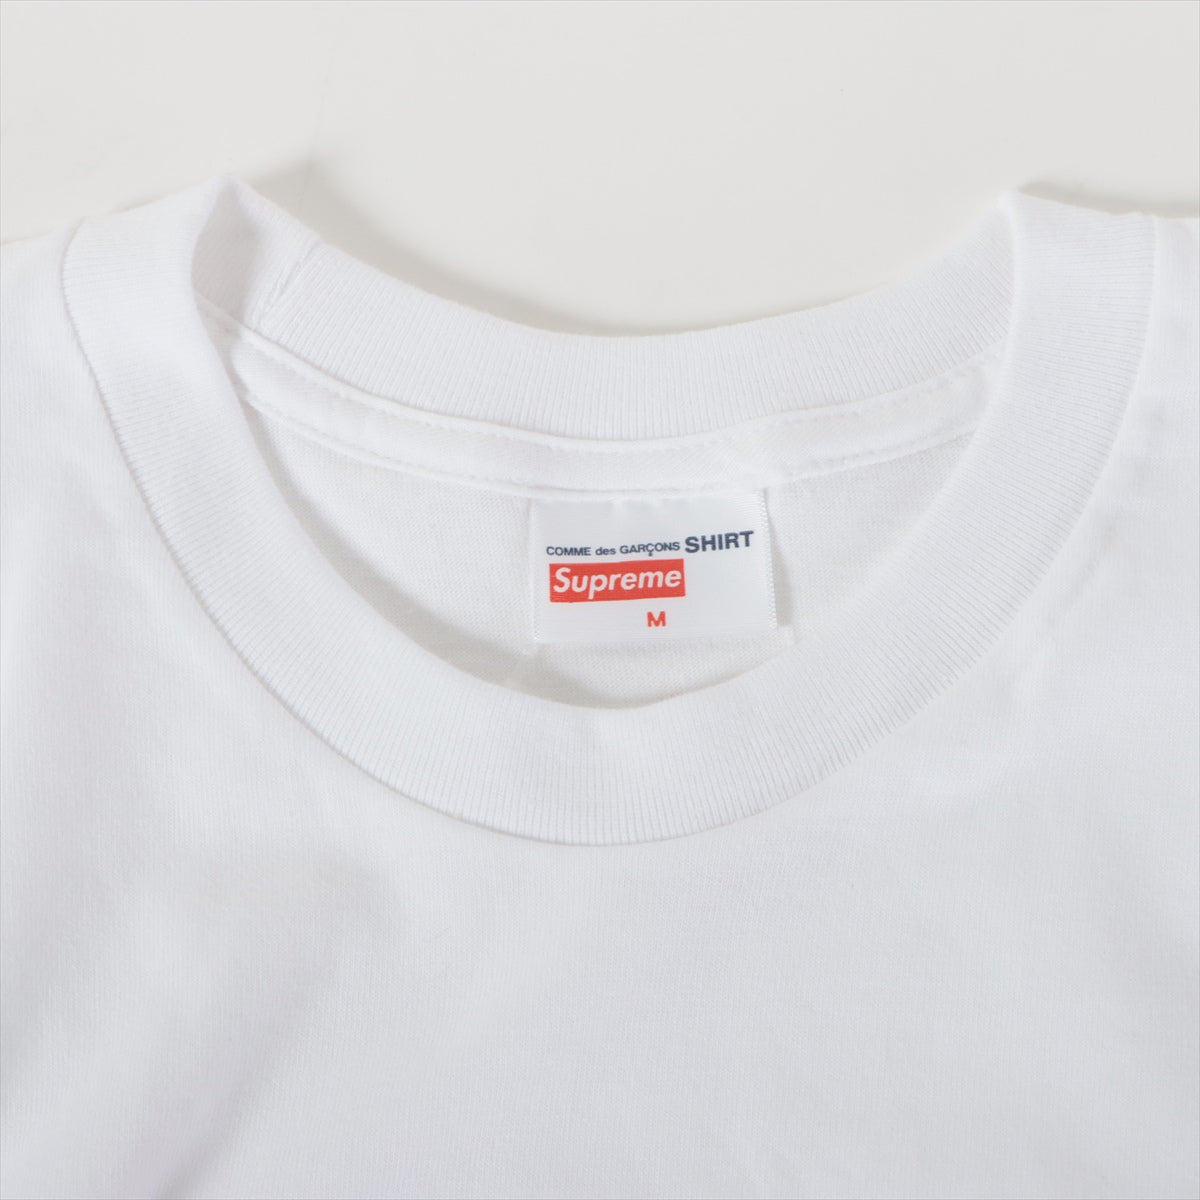 シュプリーム×コムデギャルソンシャツ 17SS コットン Tシャツ M メンズ ホワイト